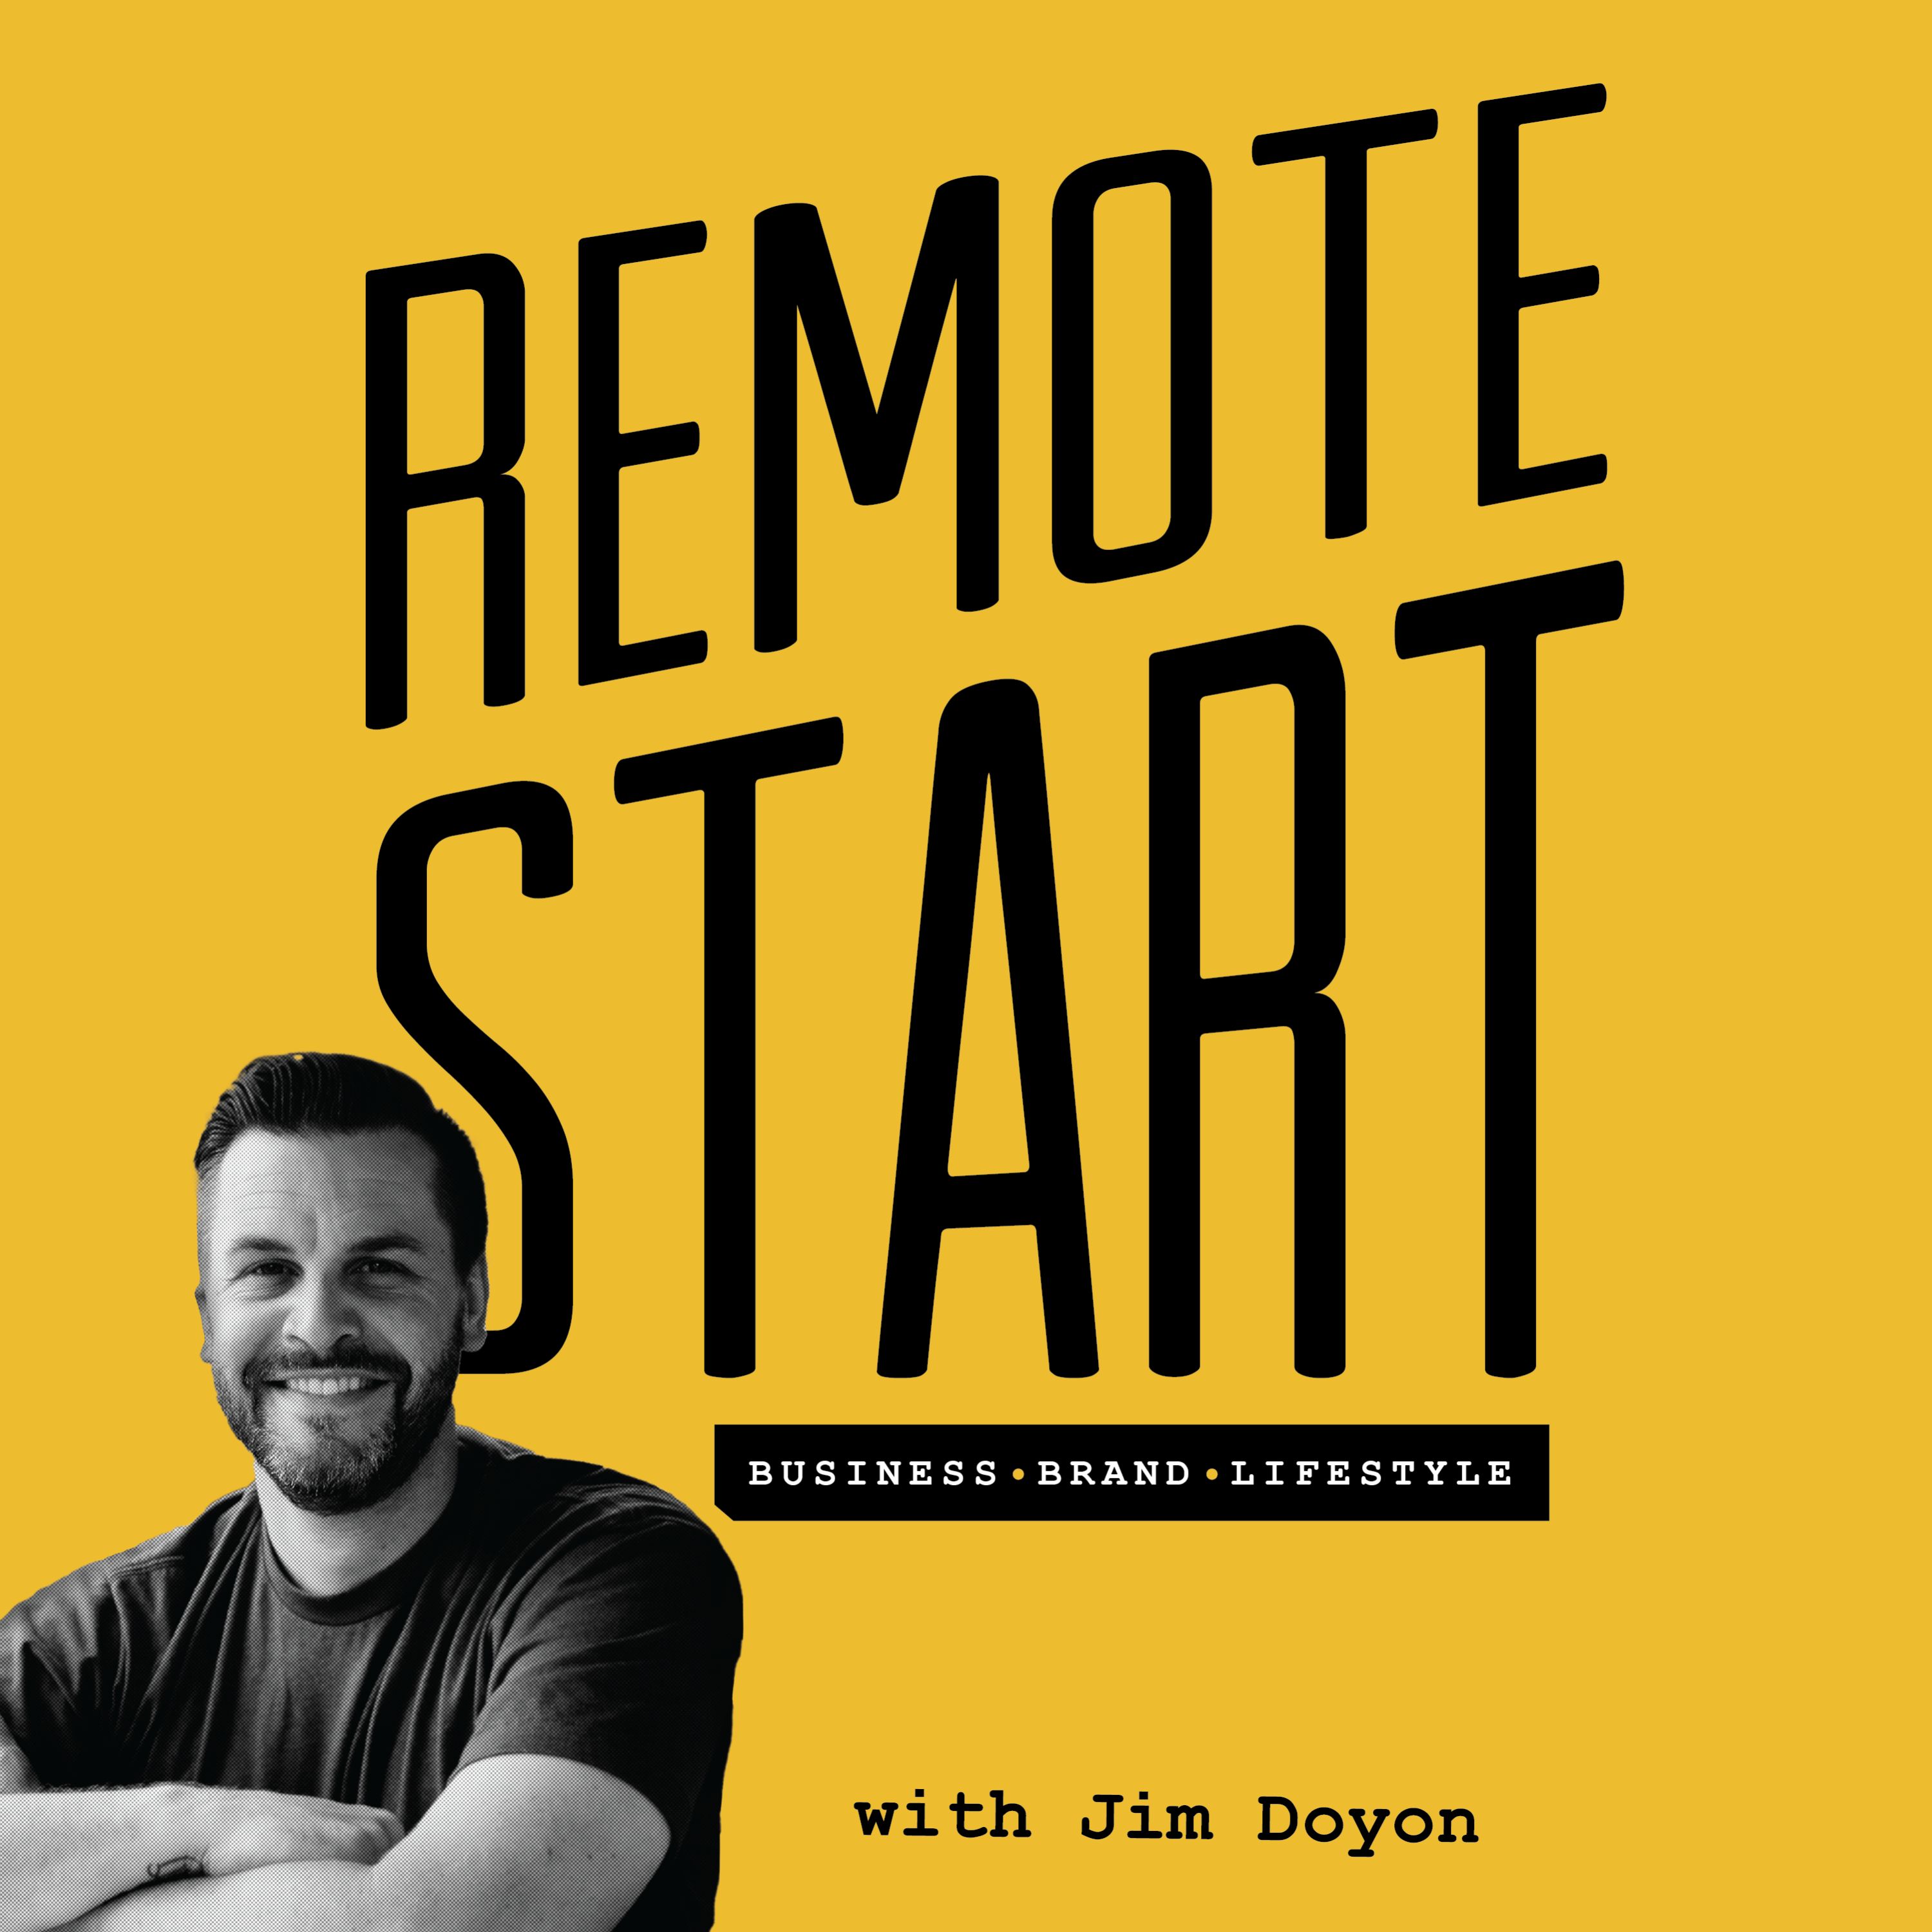 Artwork for podcast Remote Start Podcast